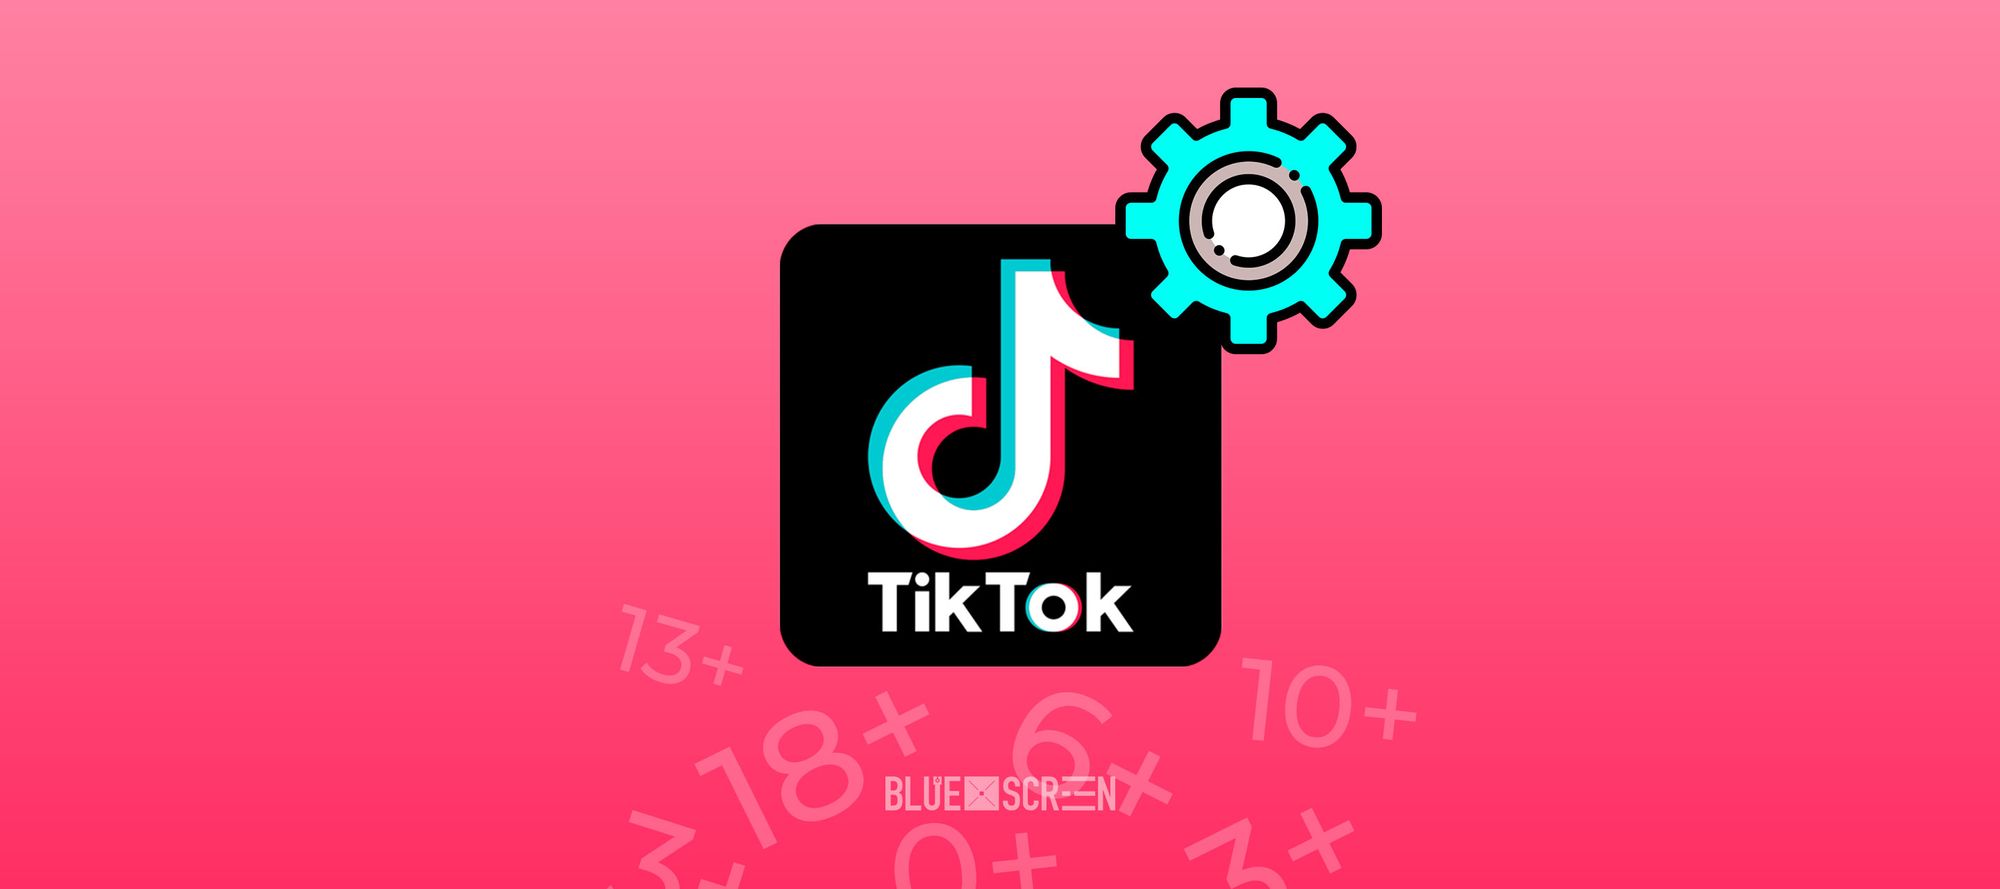 TikTok будет фильтровать контент для разных возрастных категорий